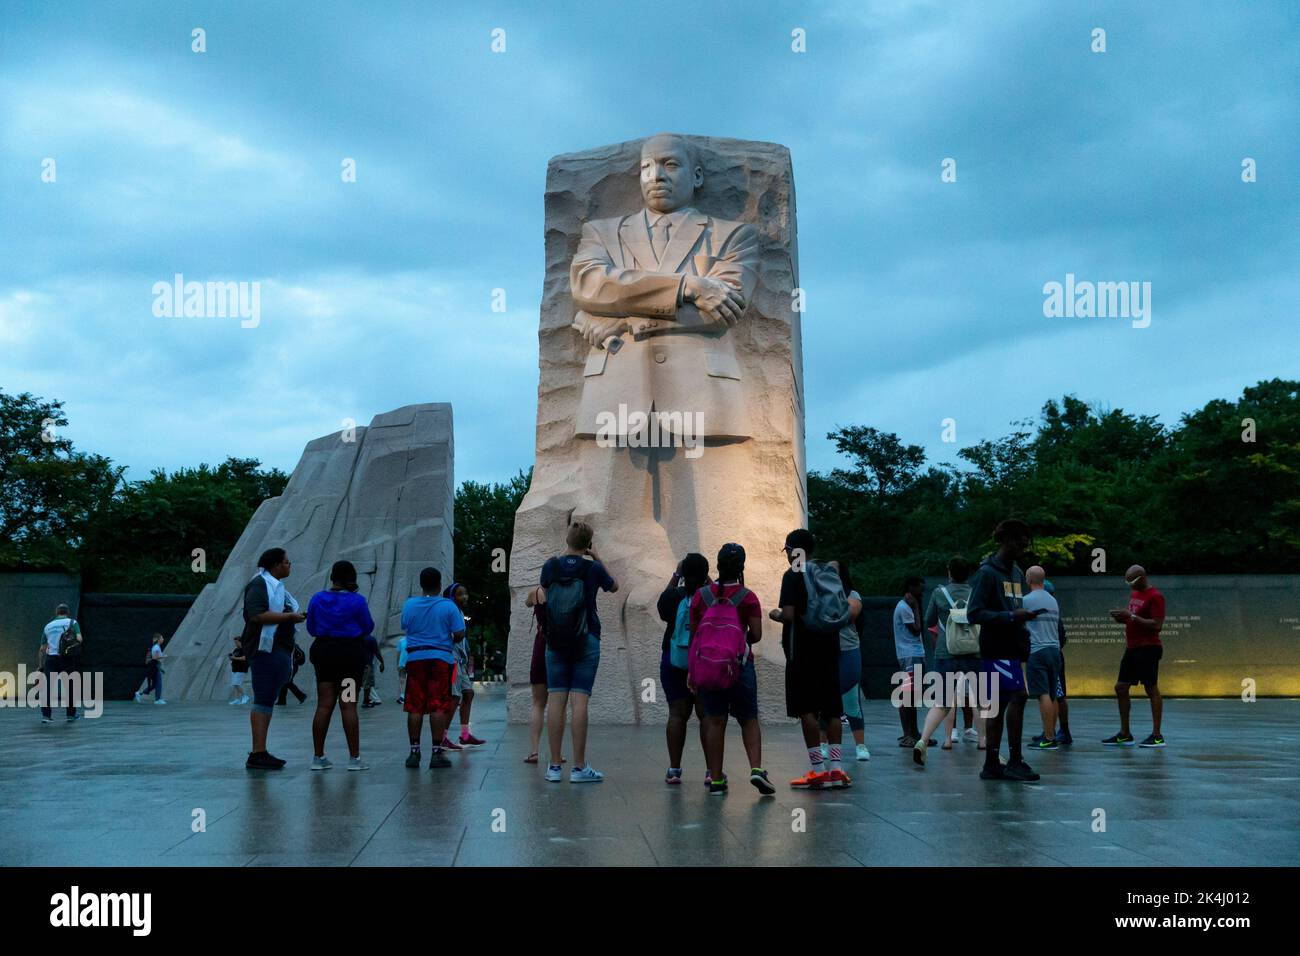 Le monument commémoratif Martin Luther King, Jr., est un monument commémoratif national situé dans le parc West Potomac, à côté du centre commercial national de Washington, D.C., aux États-Unis. Elle couvre quatre hectares et comprend la Pierre de l'espoir, une statue en granit du chef du mouvement des droits civils Martin Luther King Jr. Sculptée par le sculpteur Lei Yixin. L'inspiration pour la conception du mémorial est une ligne du discours de King « J'ai un rêve » : « hors de la montagne du désespoir, une pierre d'espoir ». Le mémorial a été ouvert au public à 22 août 2011, après plus de deux décennies de planification, de collecte de fonds et de construction. Banque D'Images